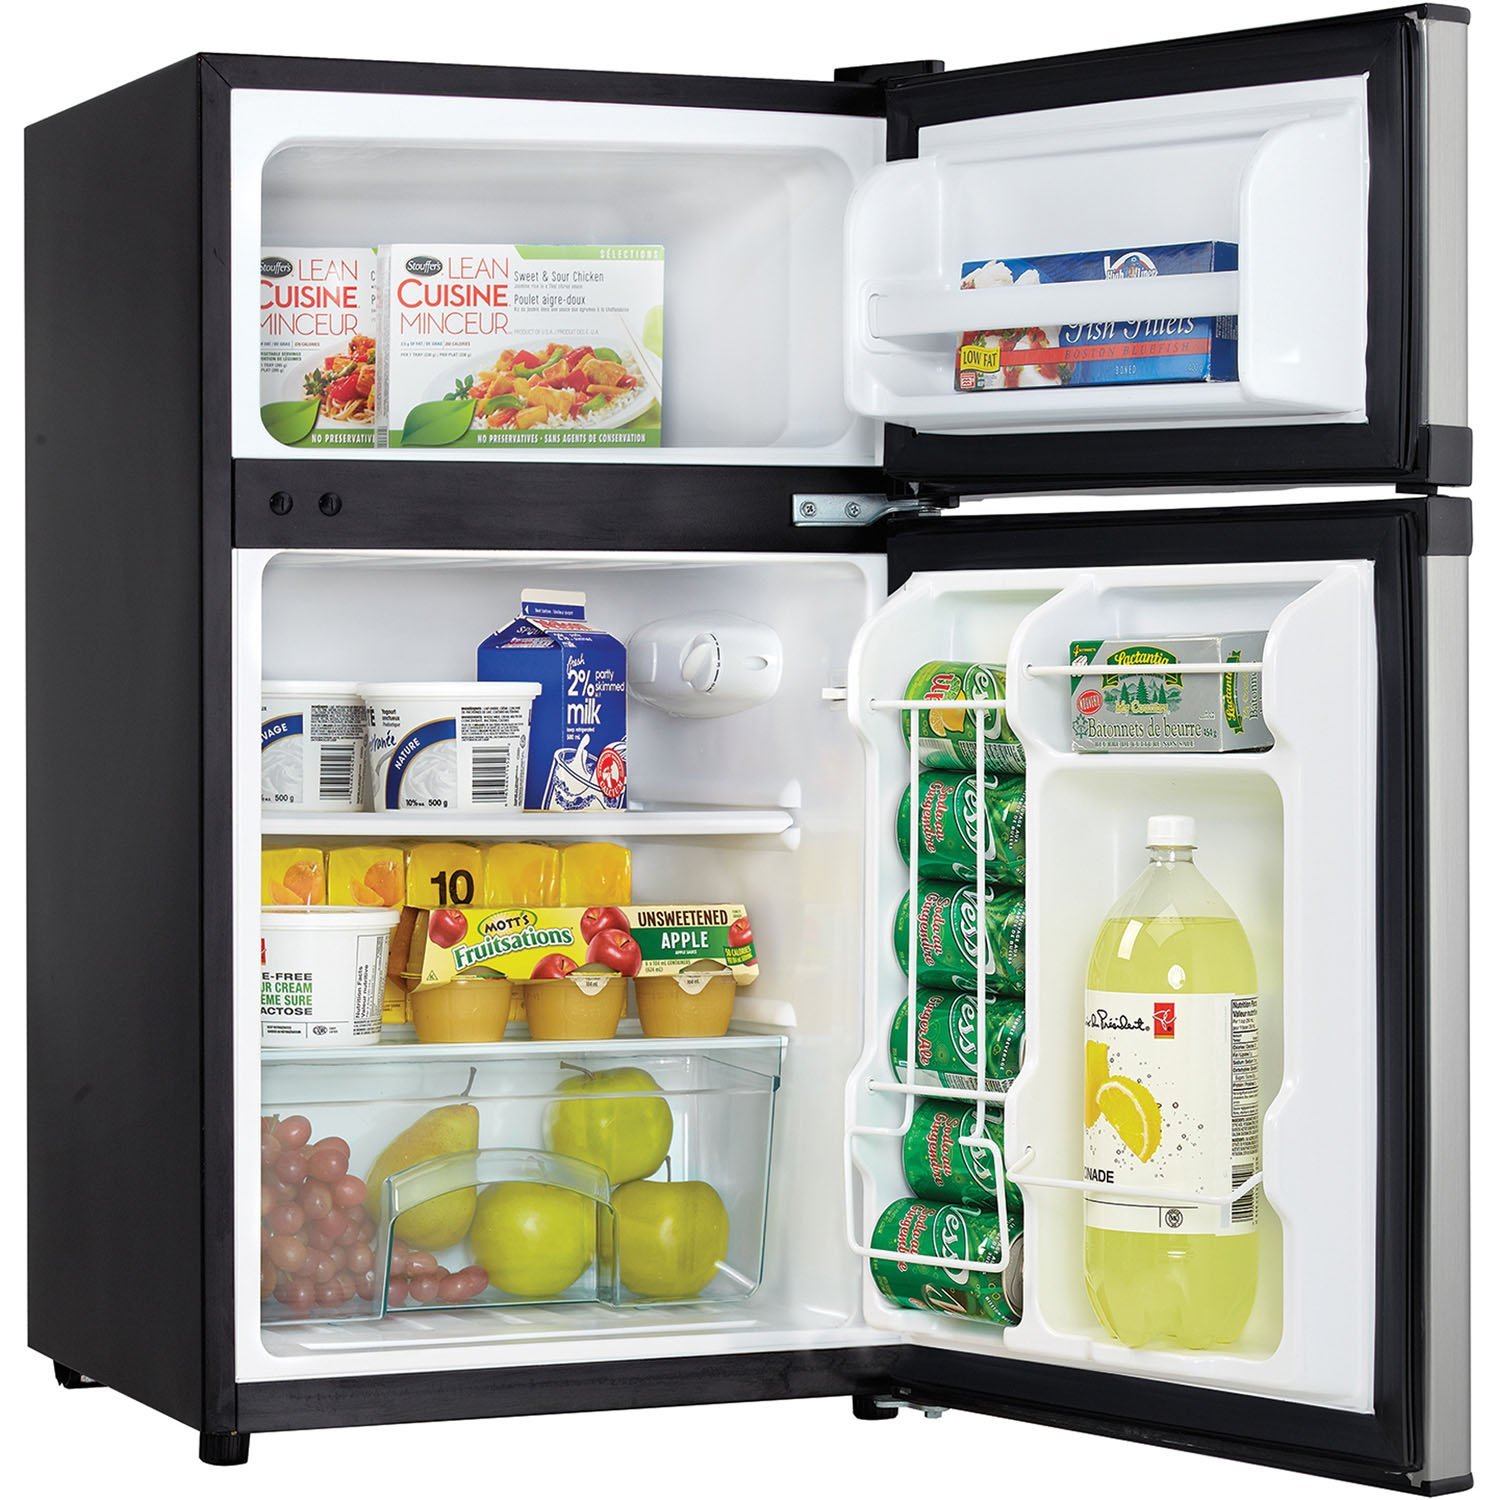 Danby cu. ft. 2 Door Compact Refrigerator Best Offer Best offers, best